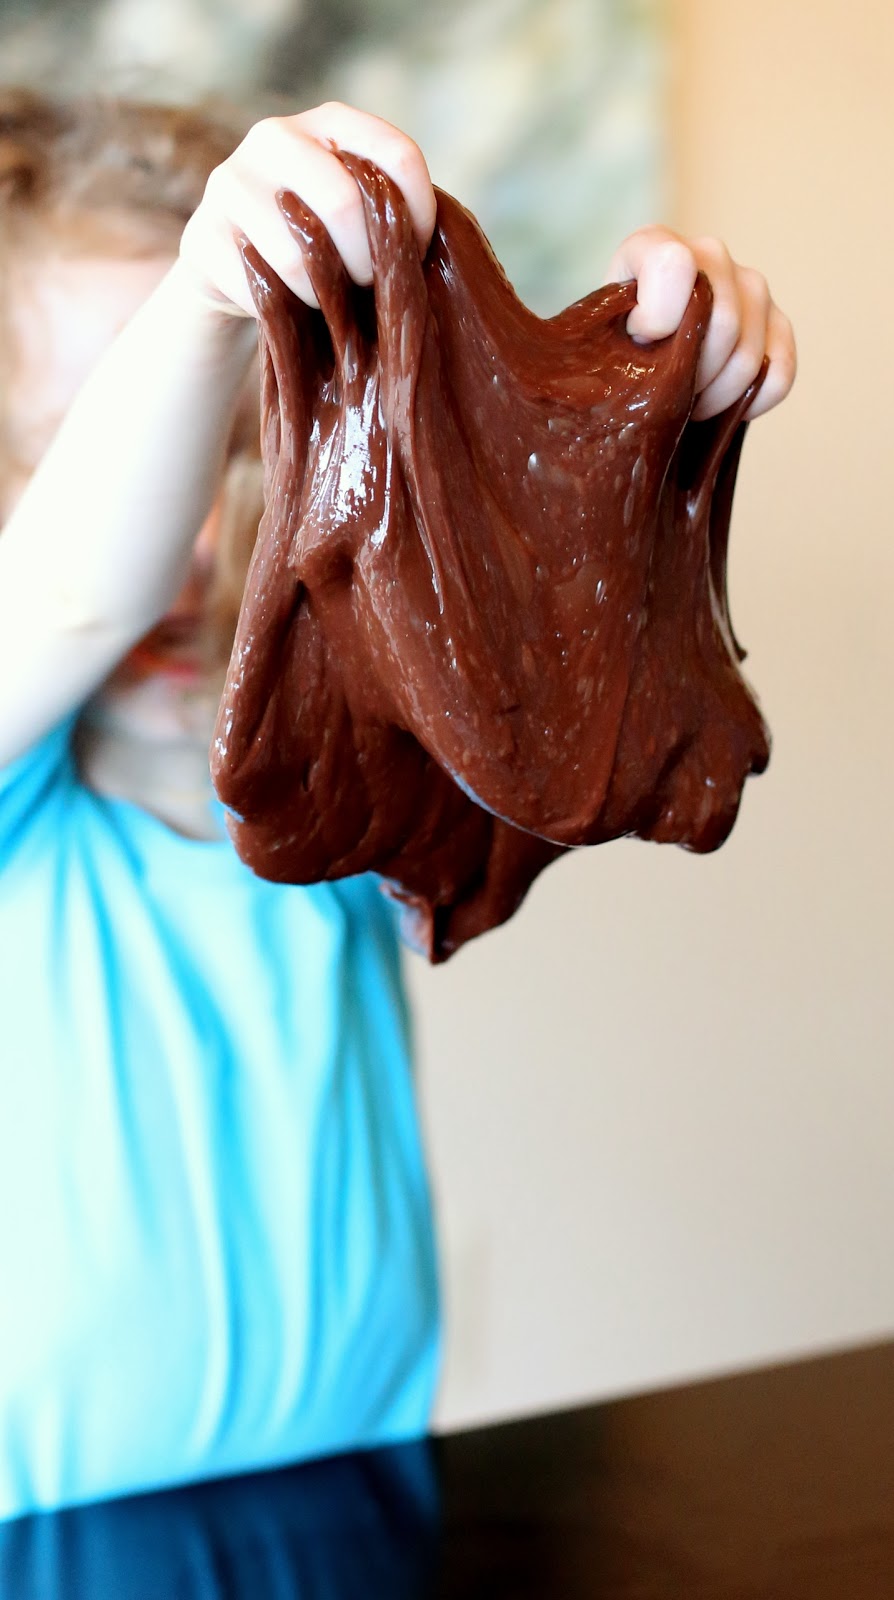 DIY chocolate stretchy slime